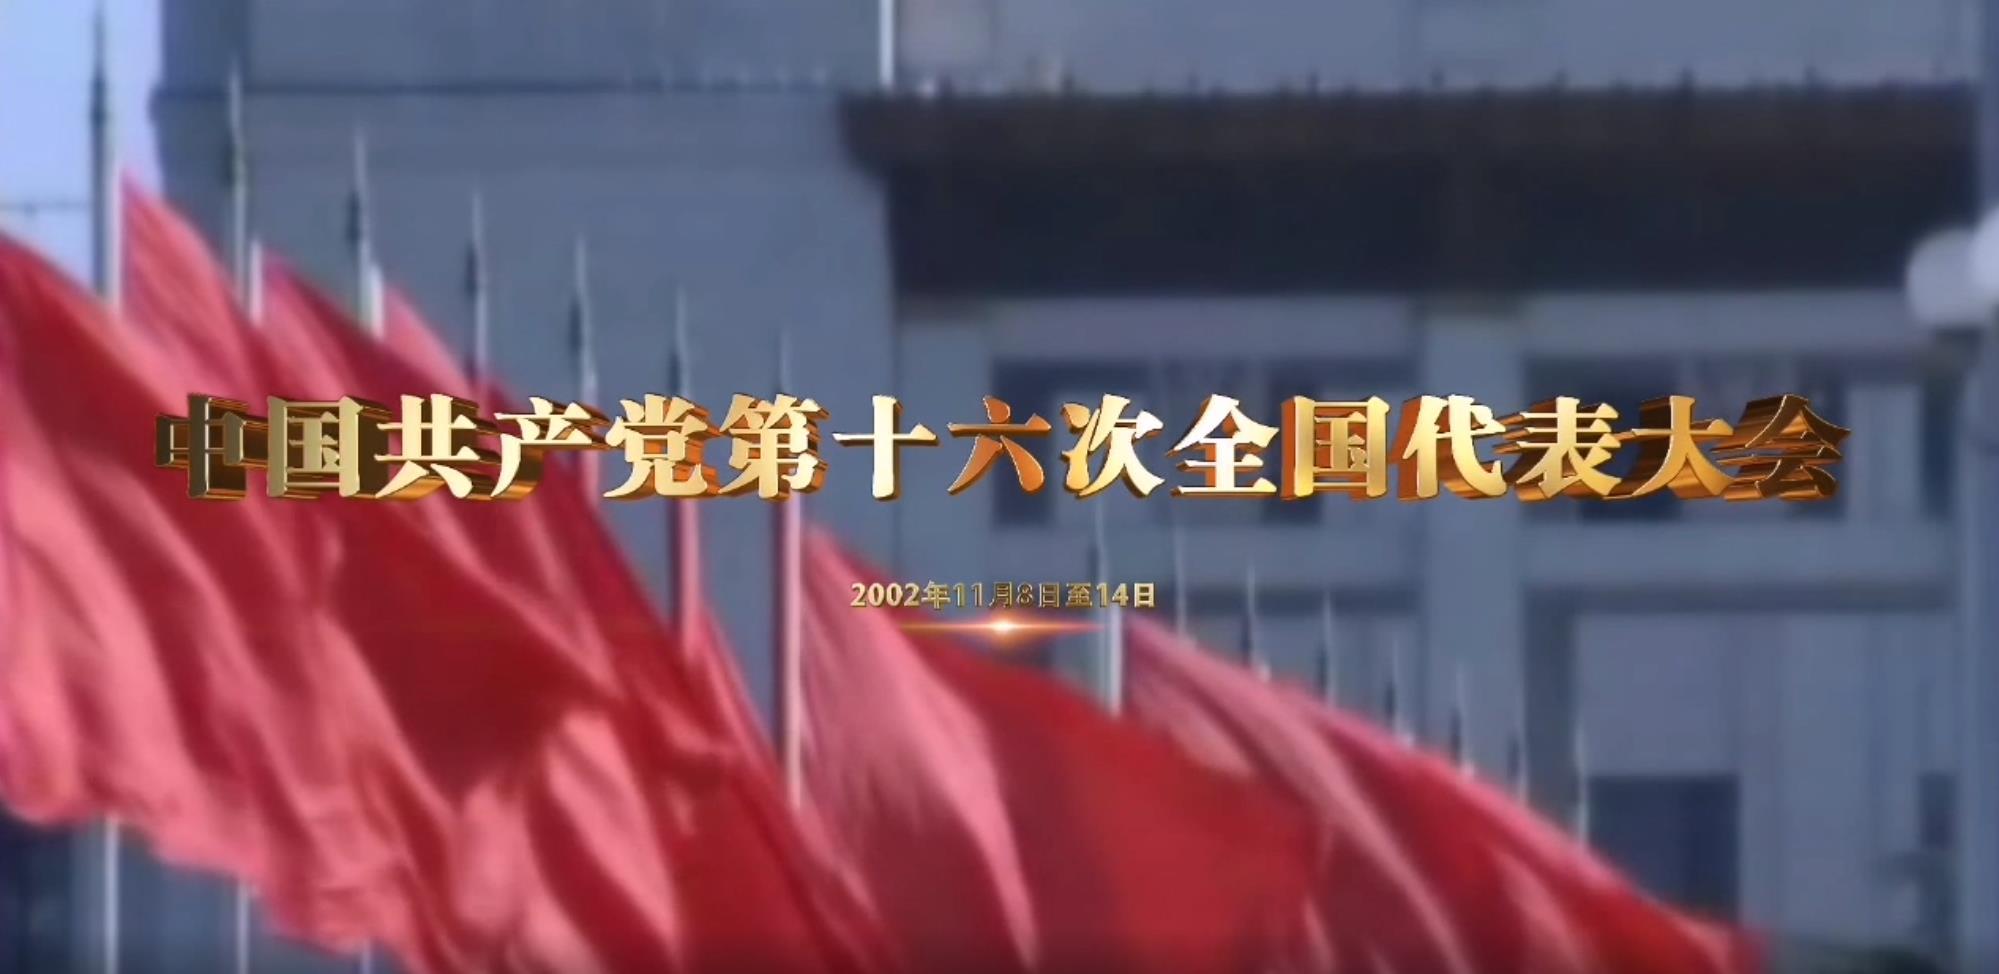 《党史上的重要会议》:中国共产党第十六次全国代表大会